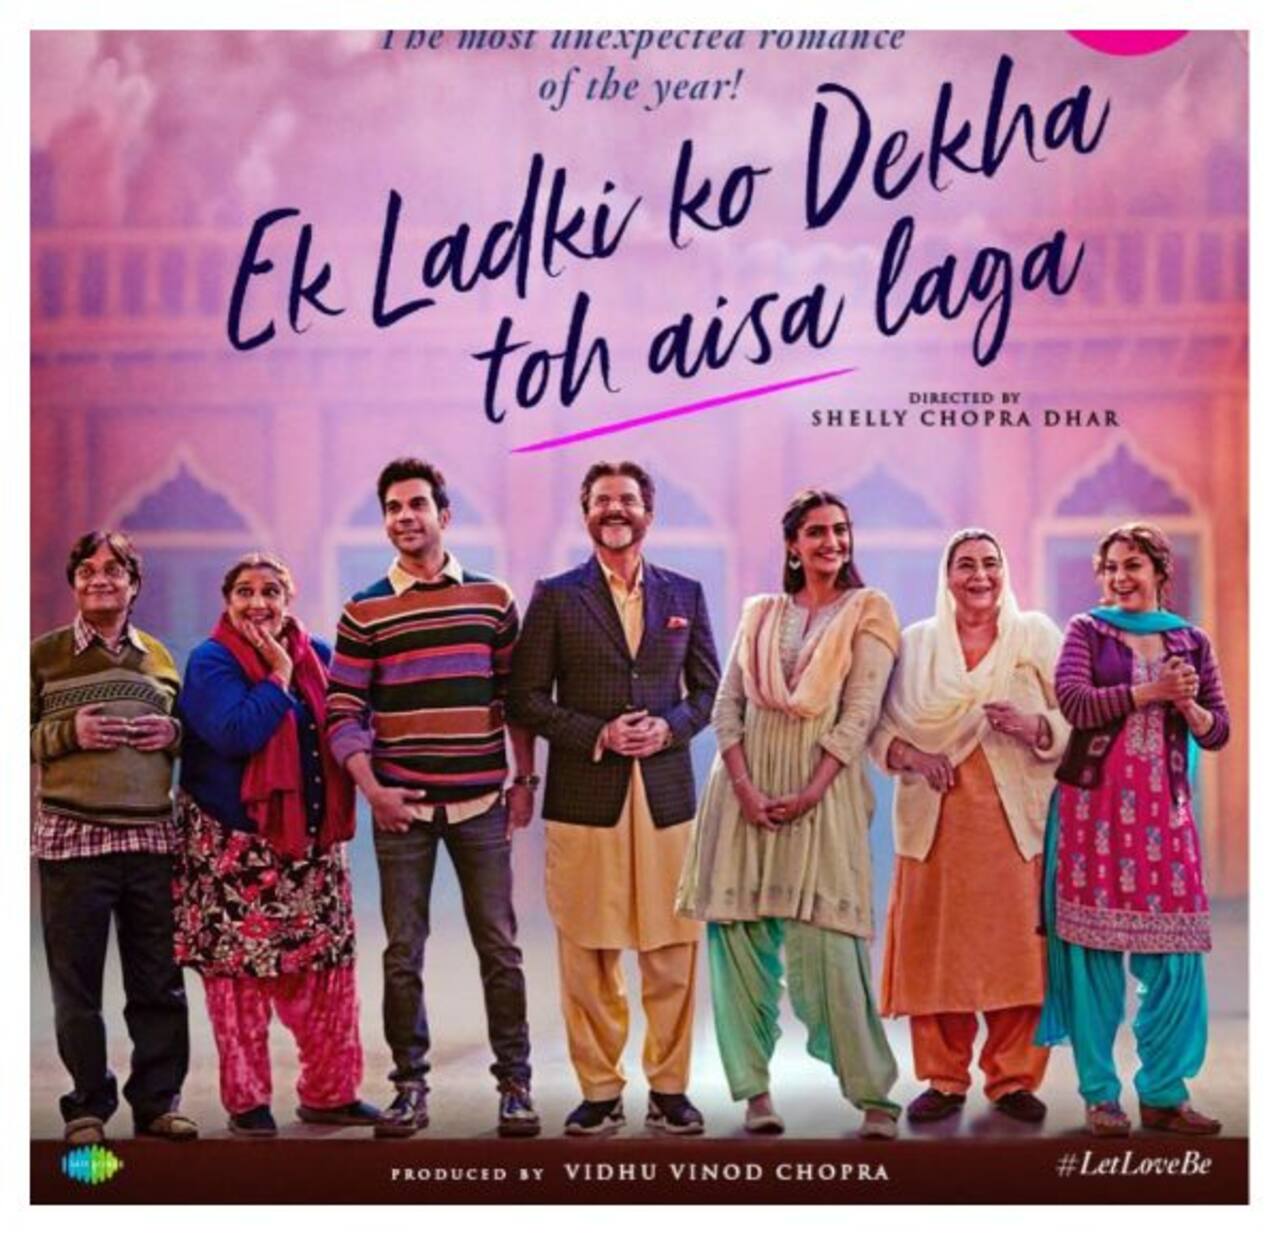 Movie this week: Ek Ladki Ko Dekha Toh Aisa Laga